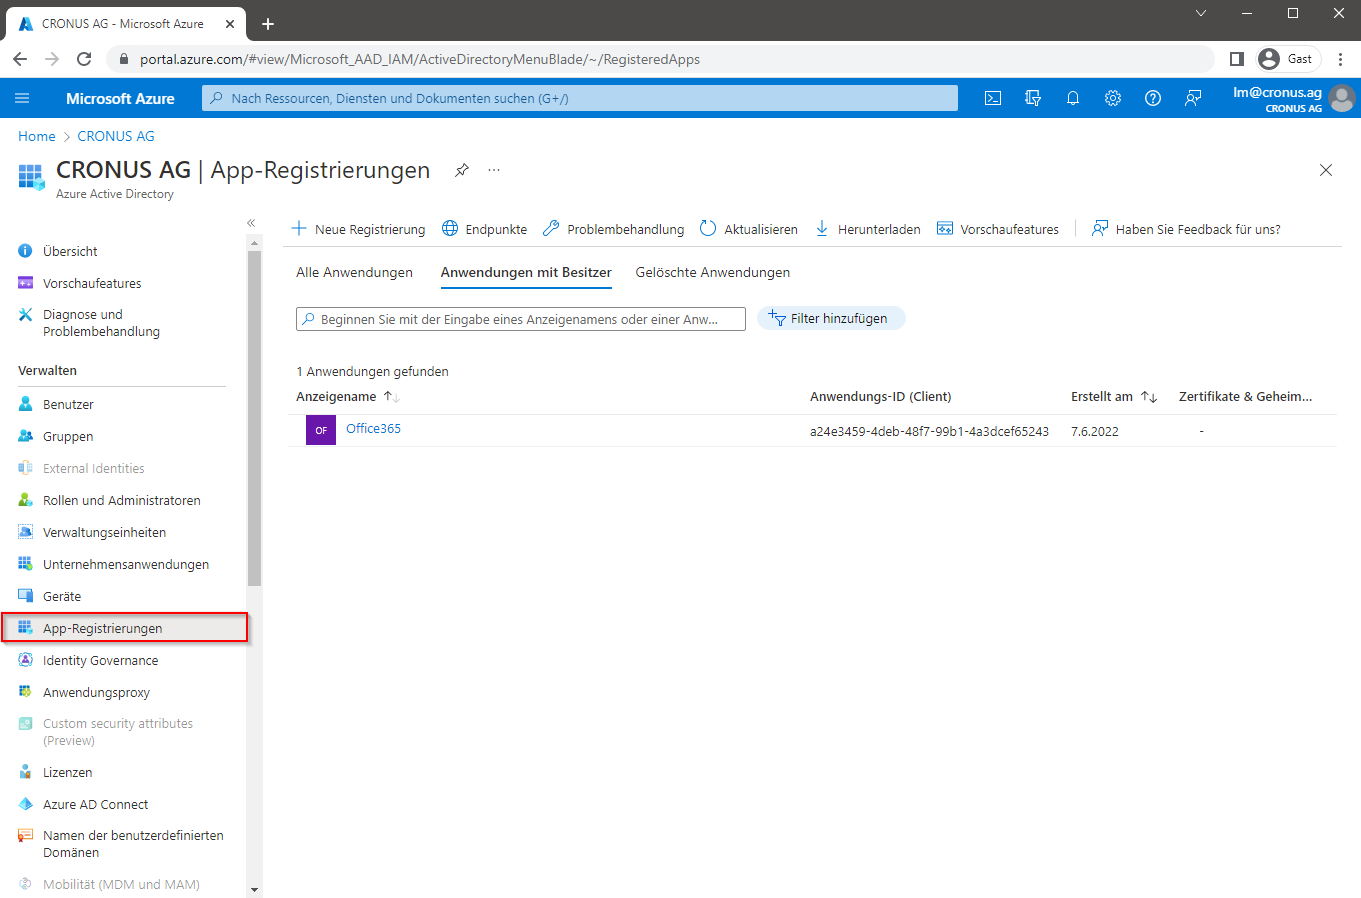 Microsoft Azure App-Registrierungen